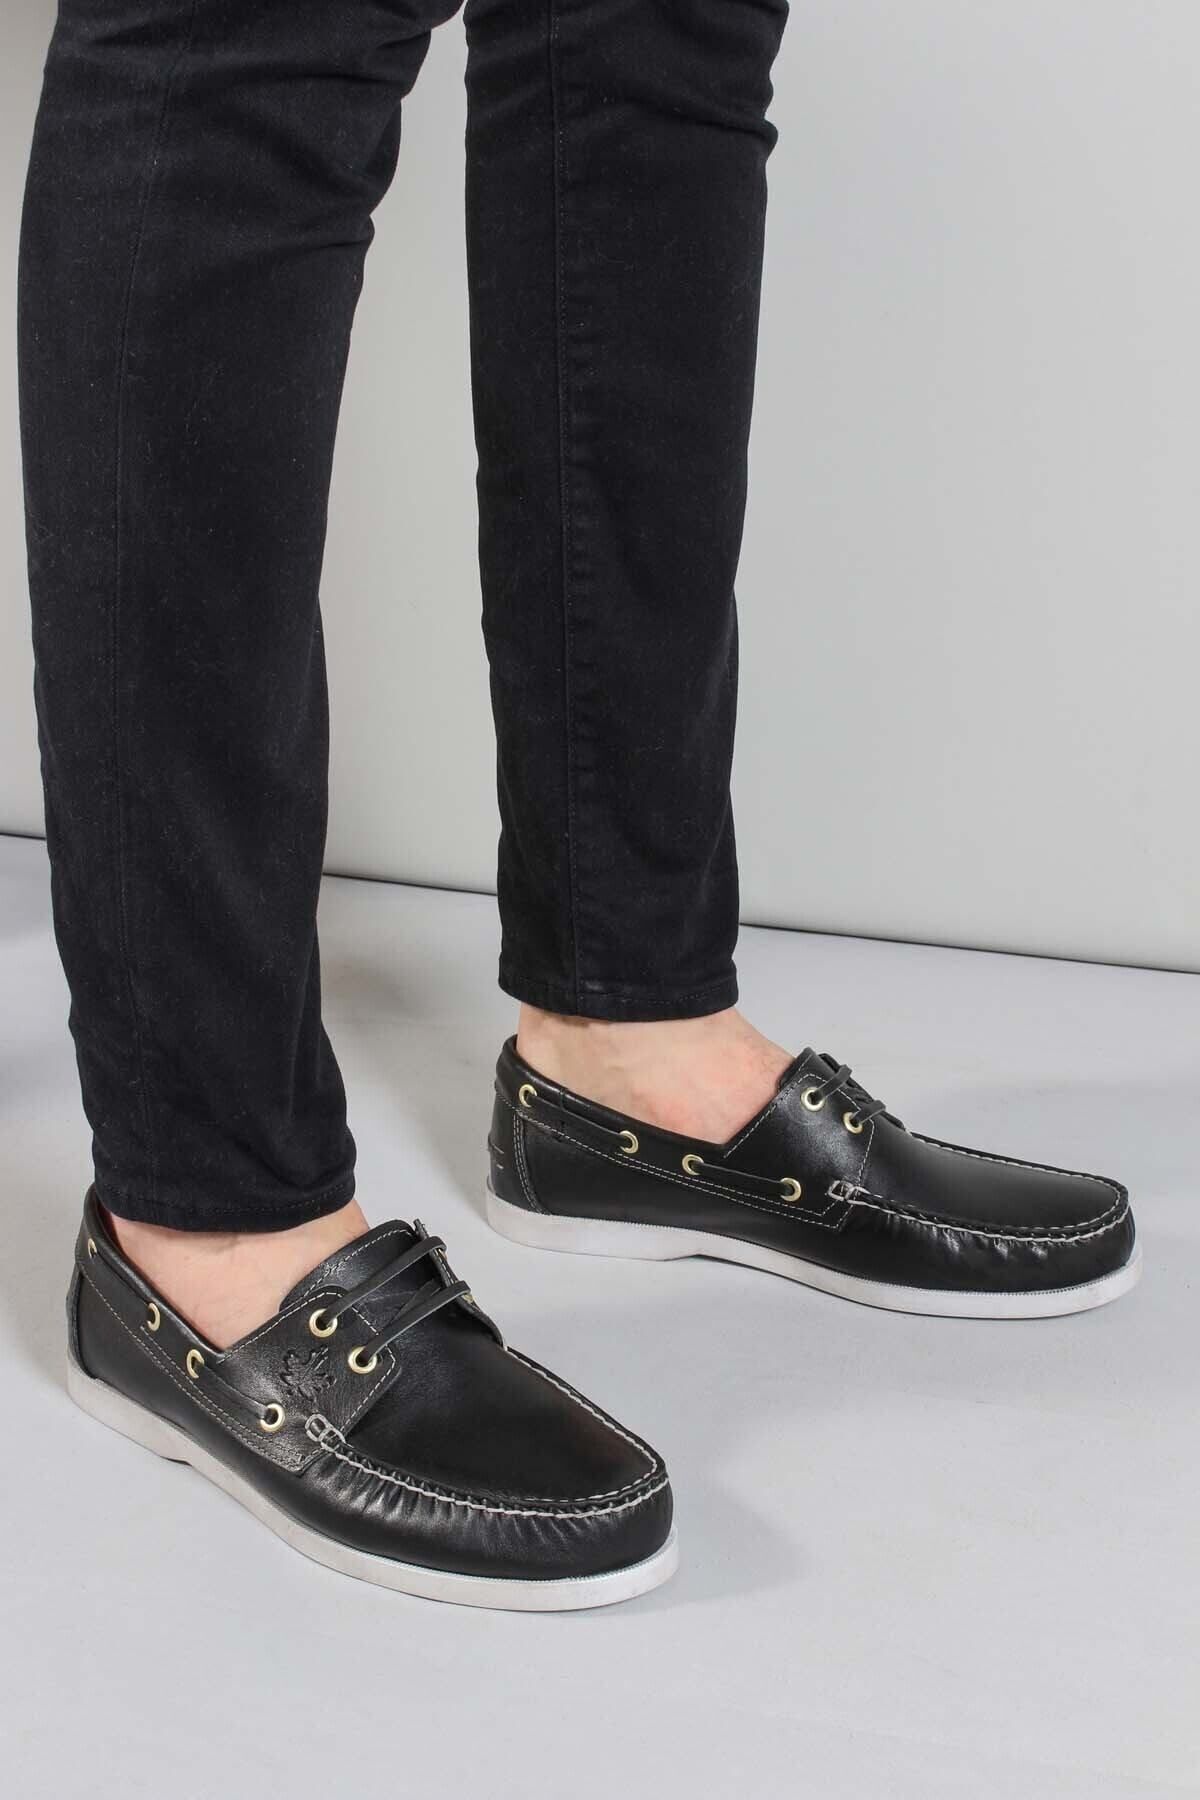 Fast Step Erkek Deri Casual Klasik Günlük Rahat Yazlık Loafer Ayakkabı Siyah 858xatımbır